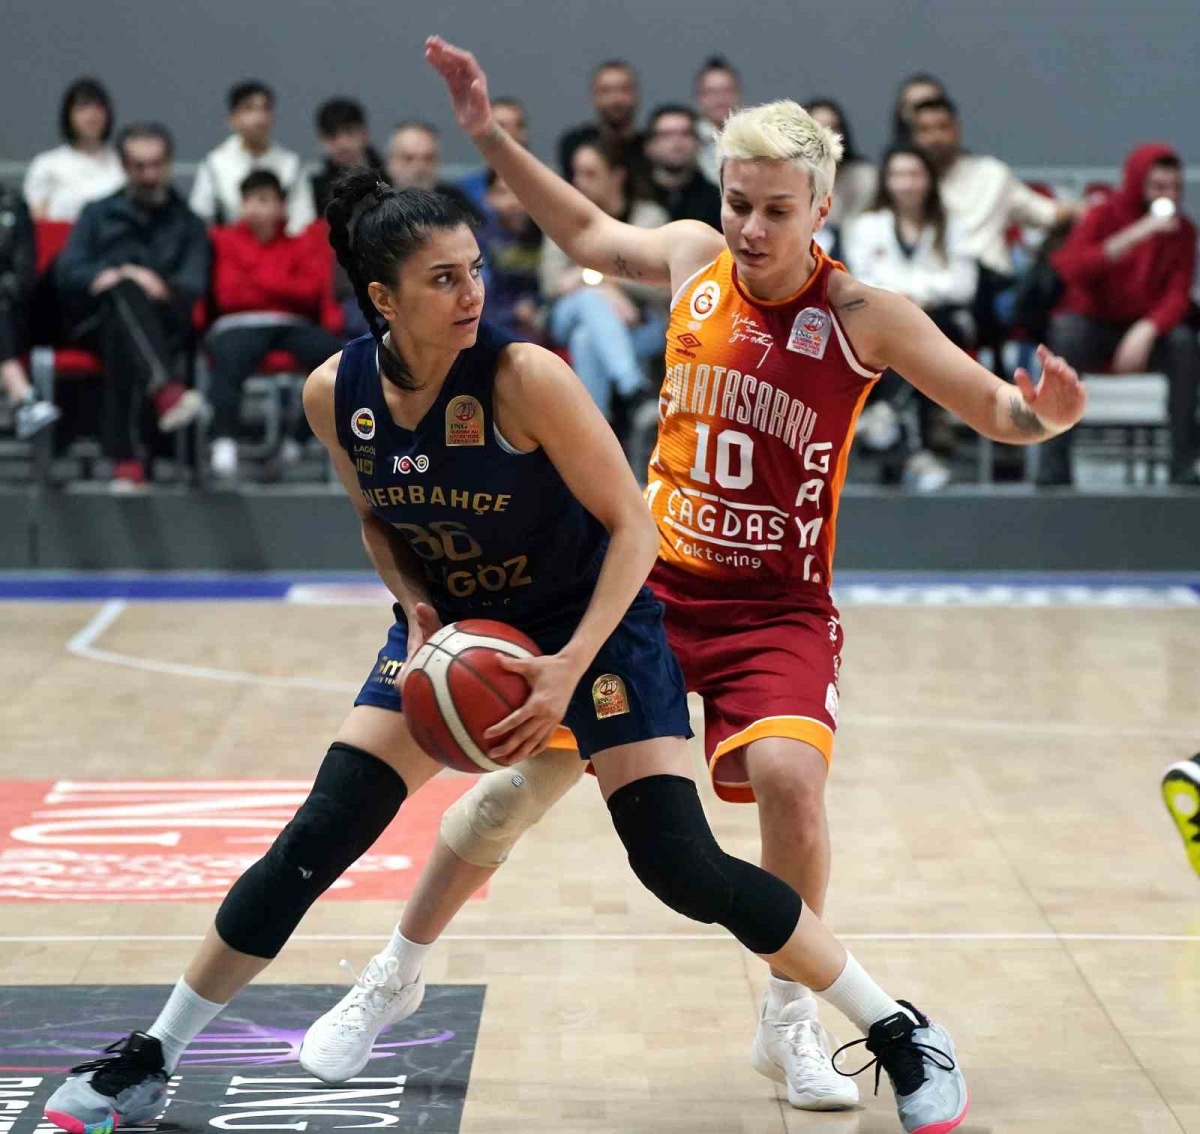 ING Kadınlar Basketbol Süper Ligi: Galatasaray: 78 - Fenerbahçe: 87
